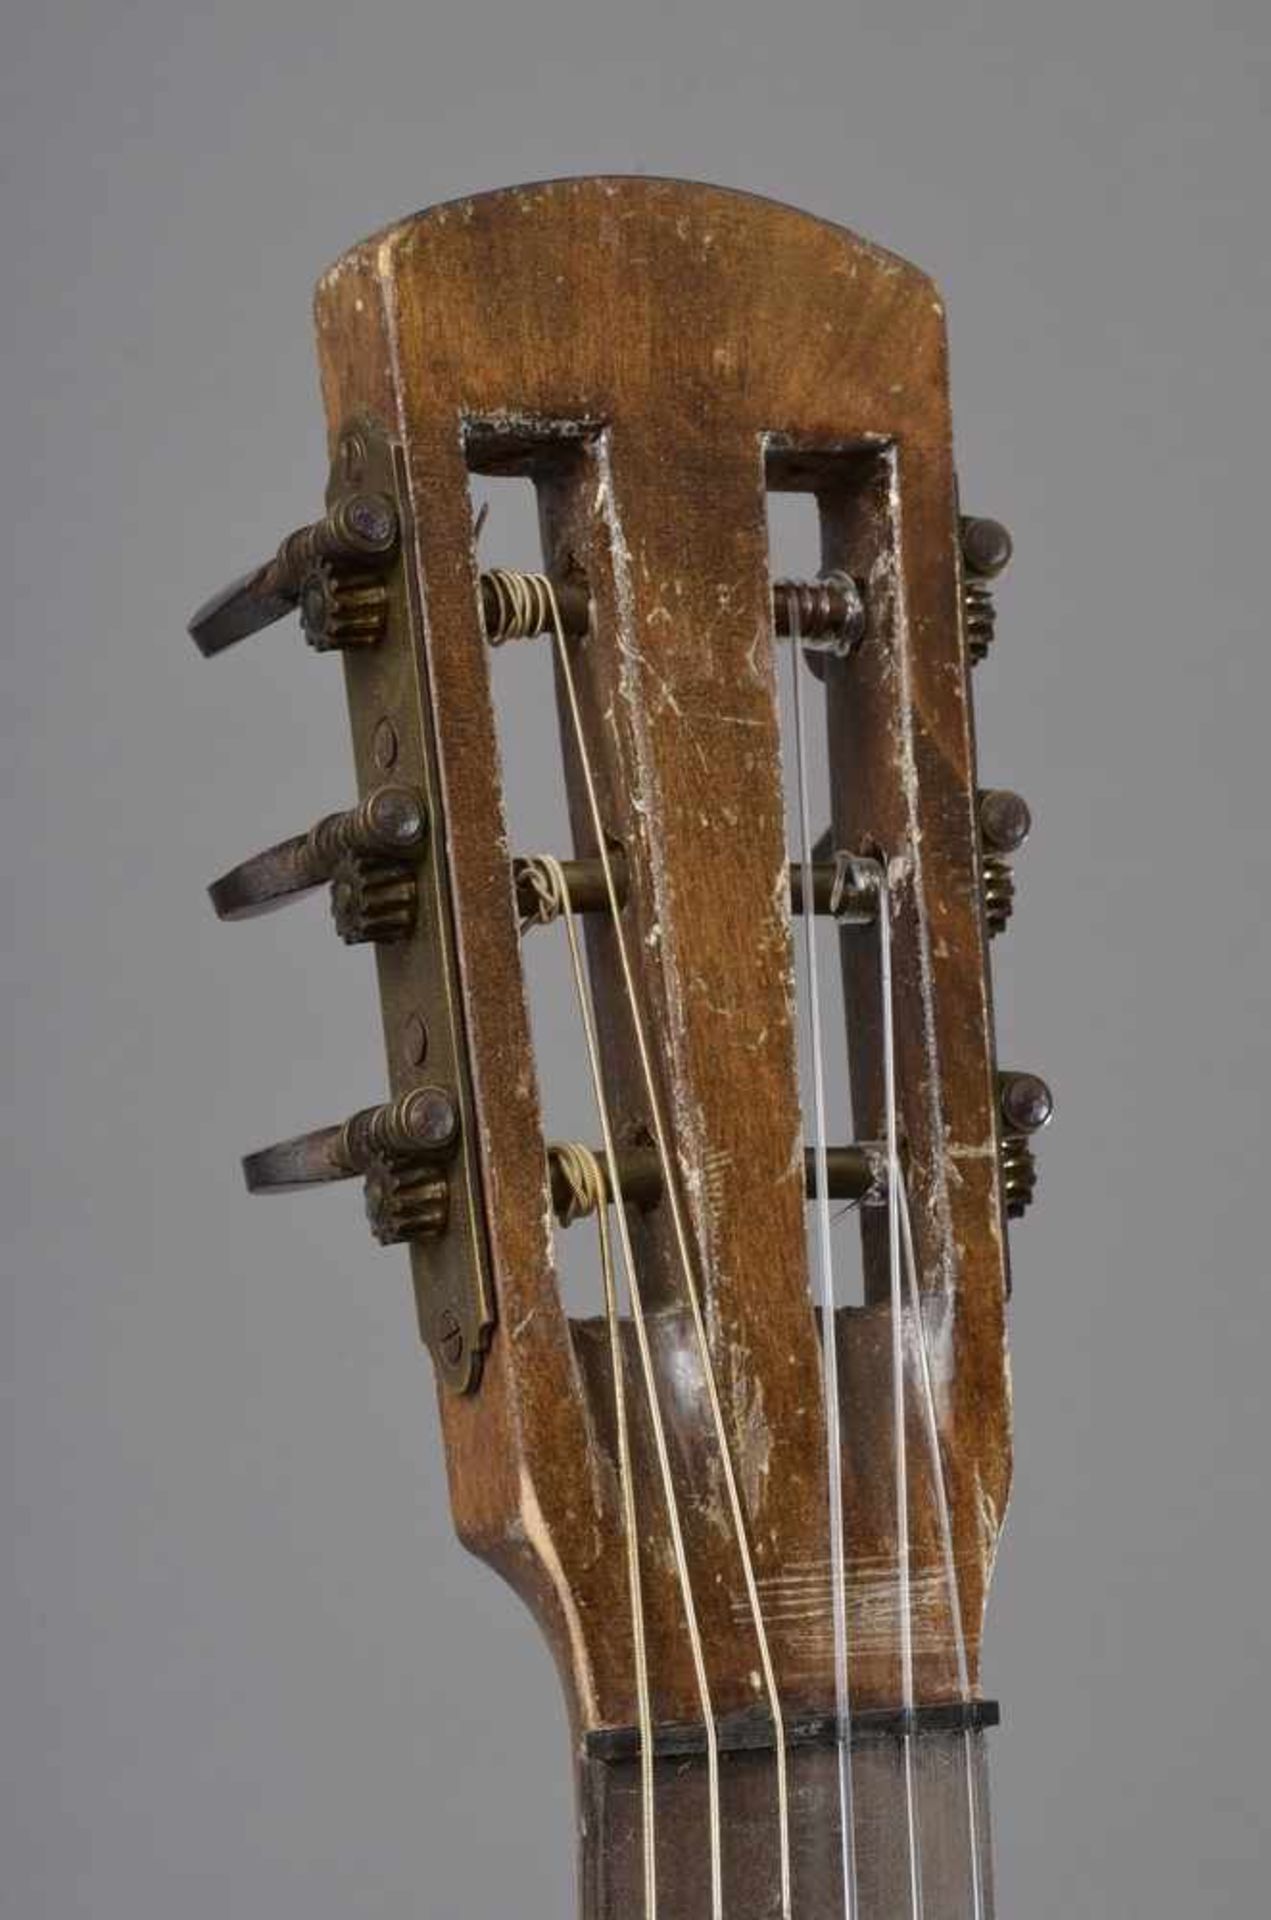 Historische Gitarre, Mensur 61,3cm, Gesamtlänge 93cm, Saitenhöhe 5mm, ca. 100 Jahre alt, spielbar - Bild 6 aus 7